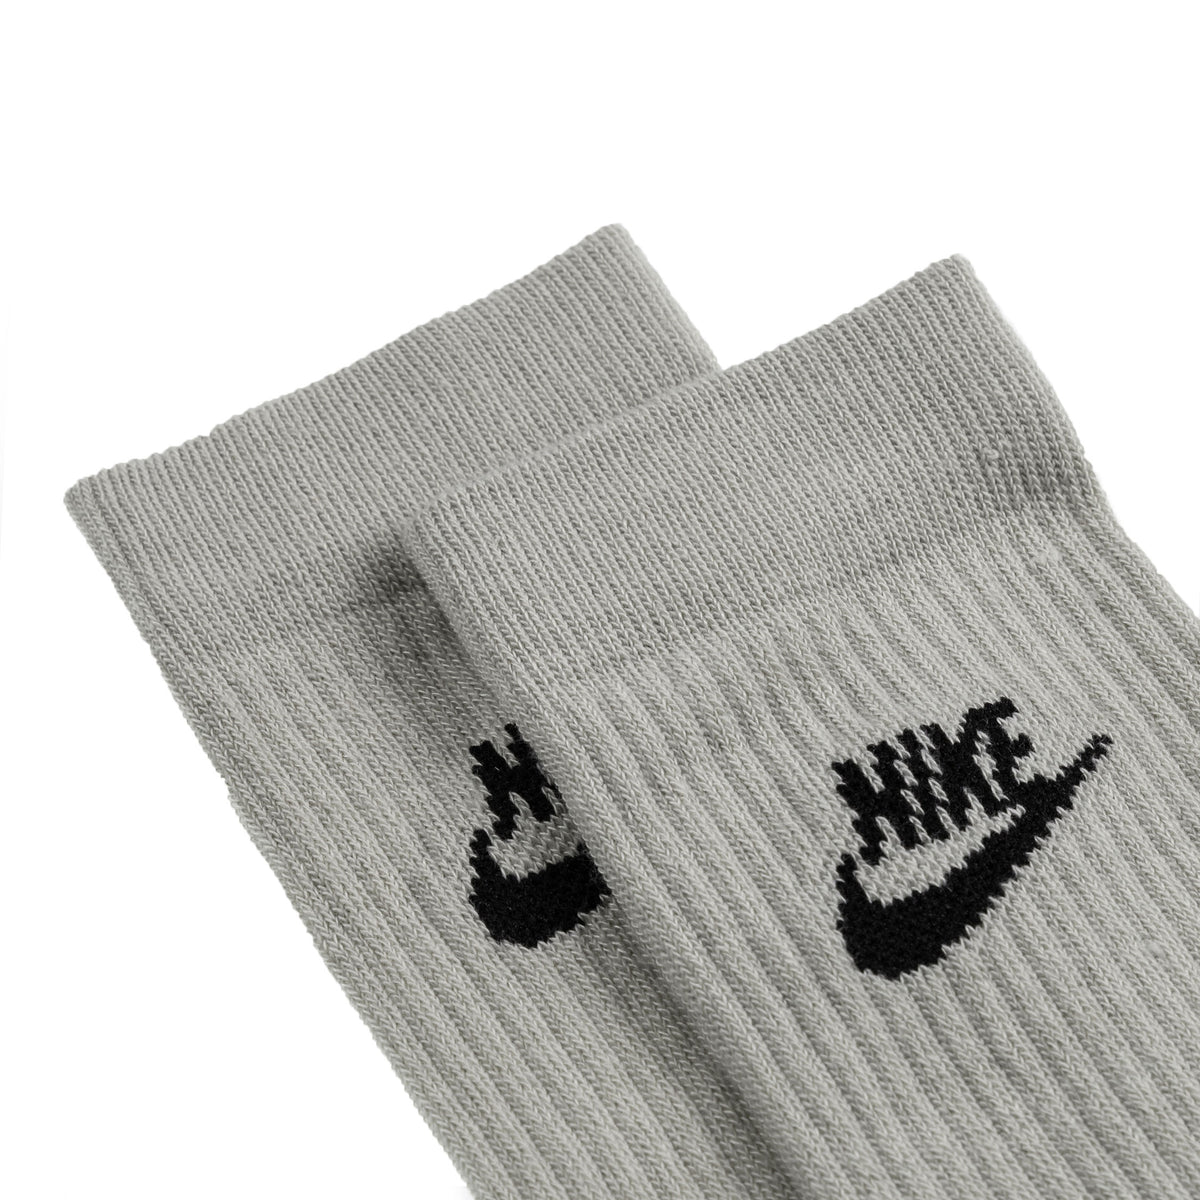 Nike Everyday Essential Crew Socks 3 Pack » Buy online now!